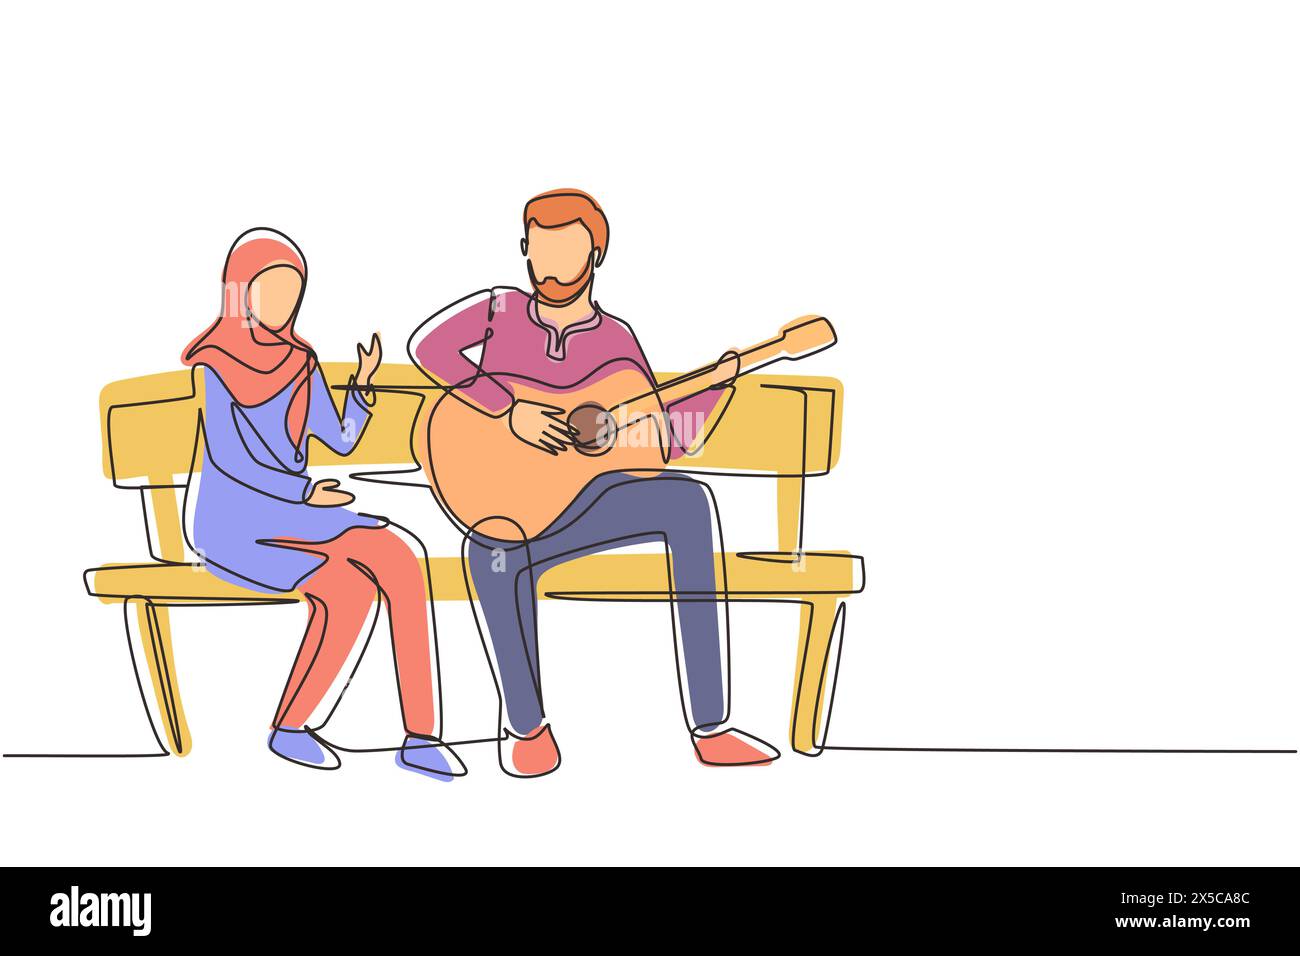 Eine durchgehende Linie zeichnet arabische Leute, die auf einer Holzbank im Park sitzen. Ein Paar mit Verabredung, ein Mann spielt Musik auf der Gitarre, ein Mädchen hört zu und singt Stock Vektor